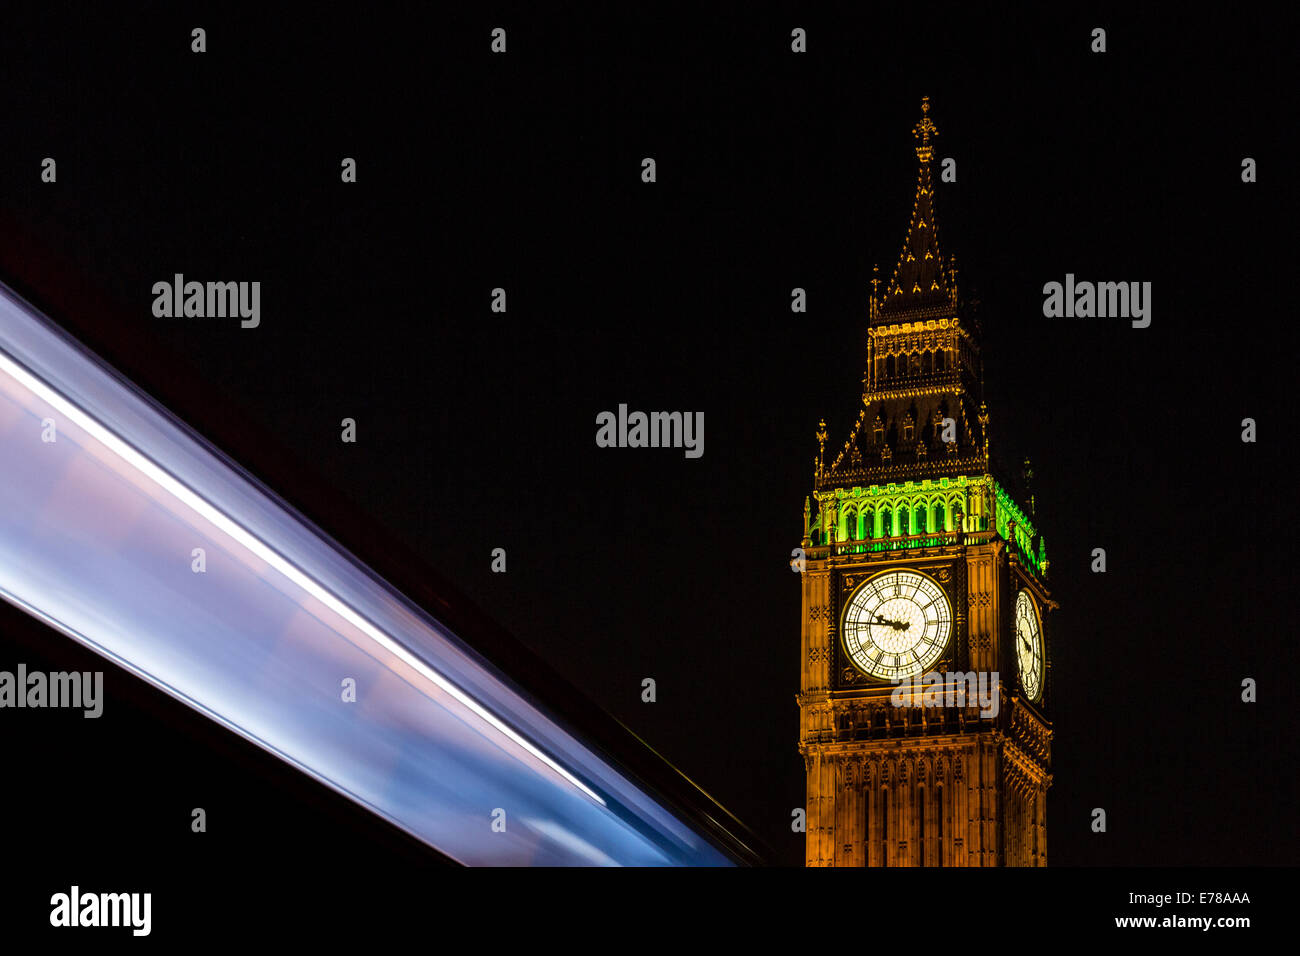 Big Ben in London, England am 21:46 am 3. September 2014 fotografiert. Zeitgleich mit einem Londoner Bus zusammen Stockfoto